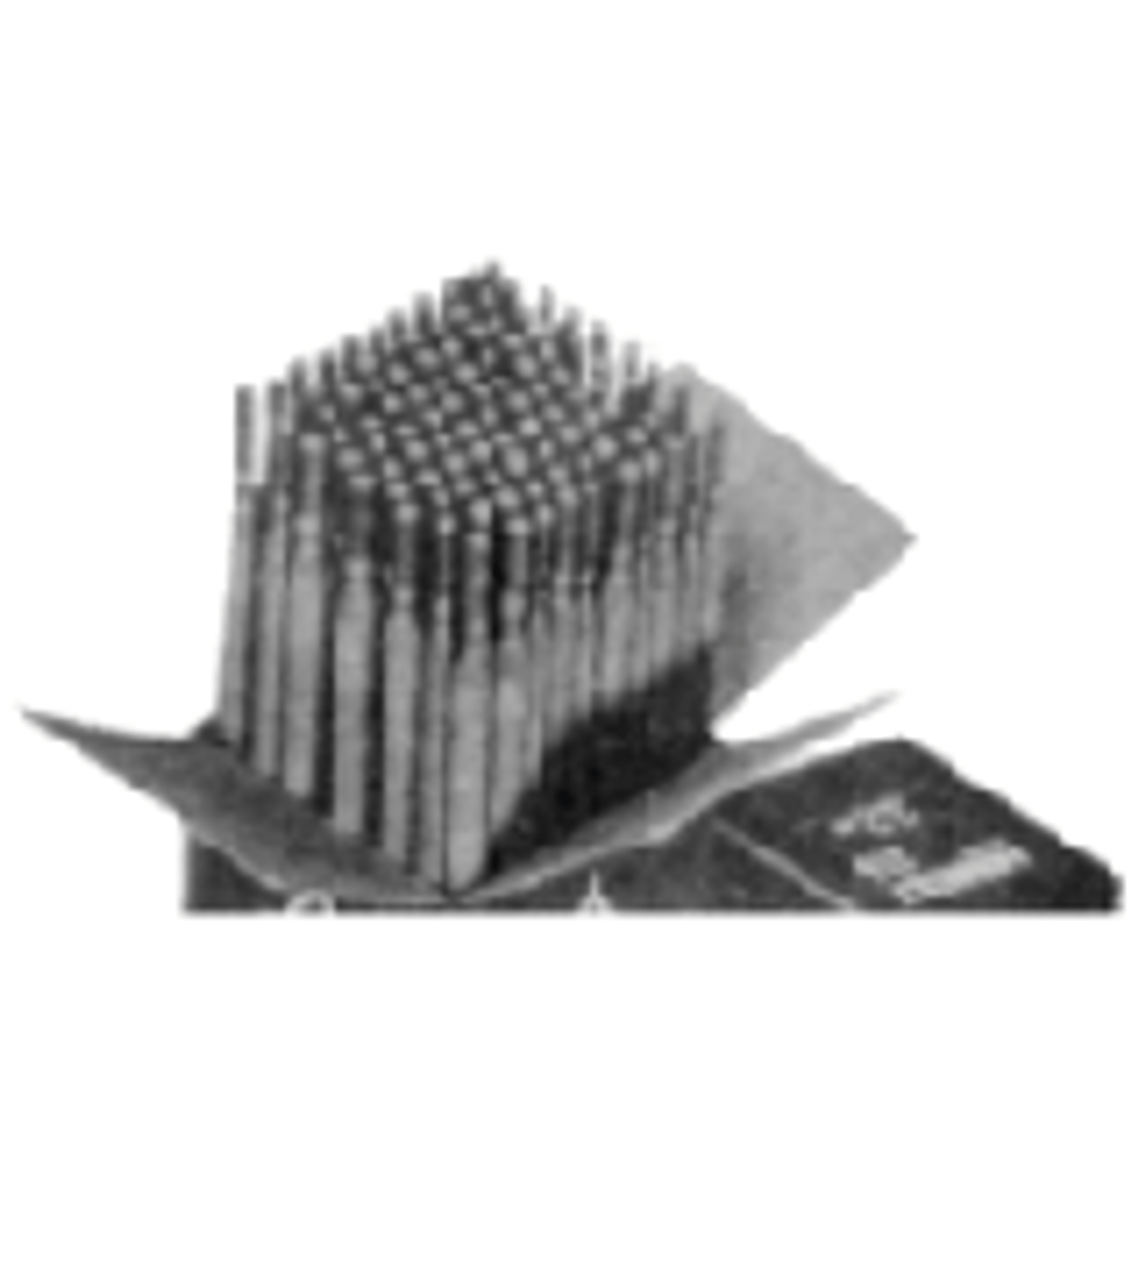 IMPA 851365 WELDING ELECTRODES 2,5mm box 1,0 kg. CAST IRON